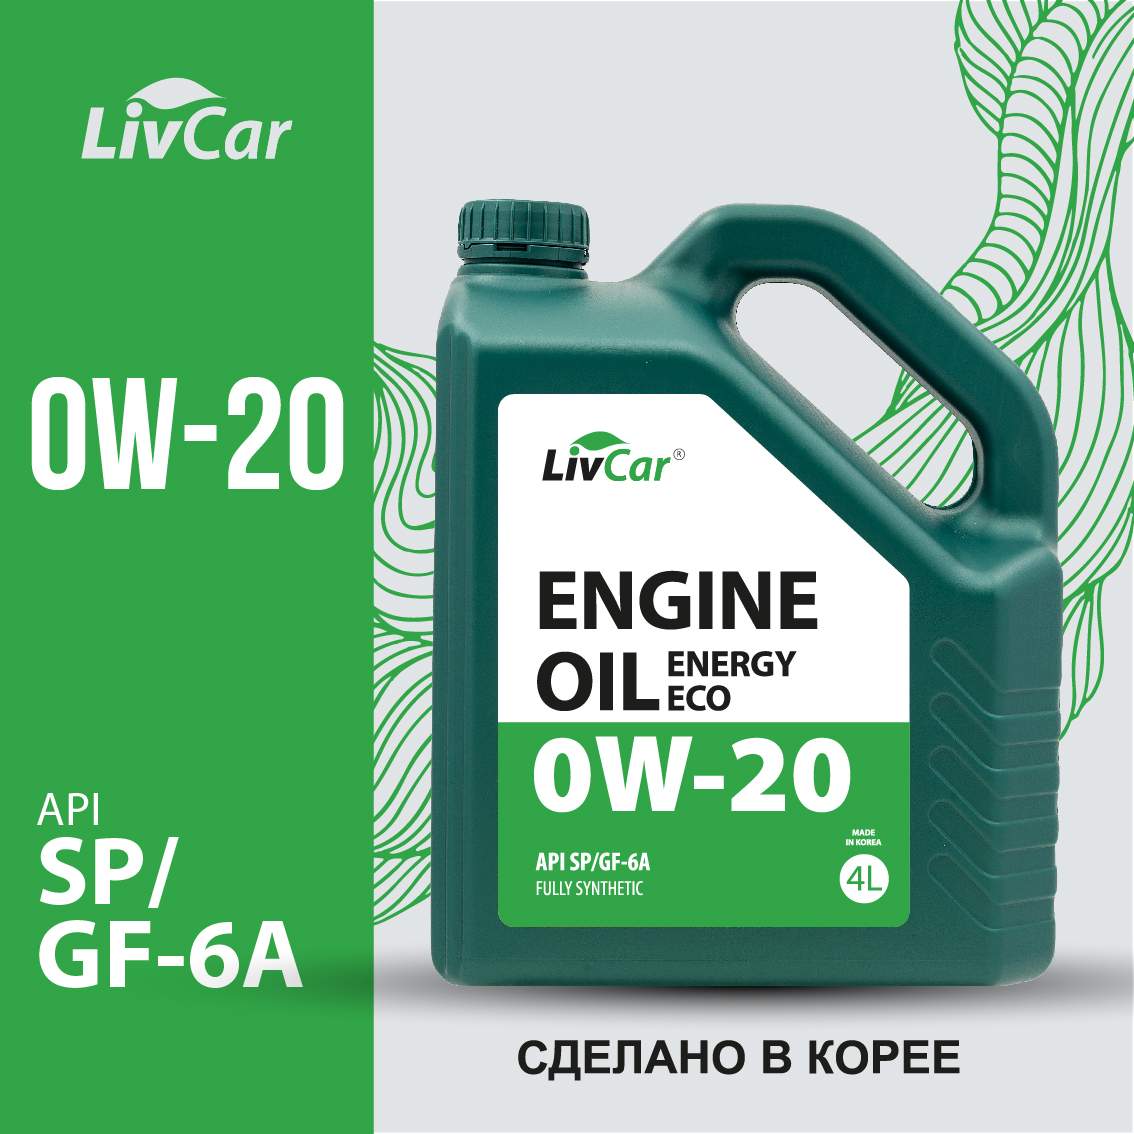 Моторное масло LivCar Engine Oil ENERGY ECO 0W20 API SP/GF-6A 4л - купить в Москве, цены на Мегамаркет | 600013467116